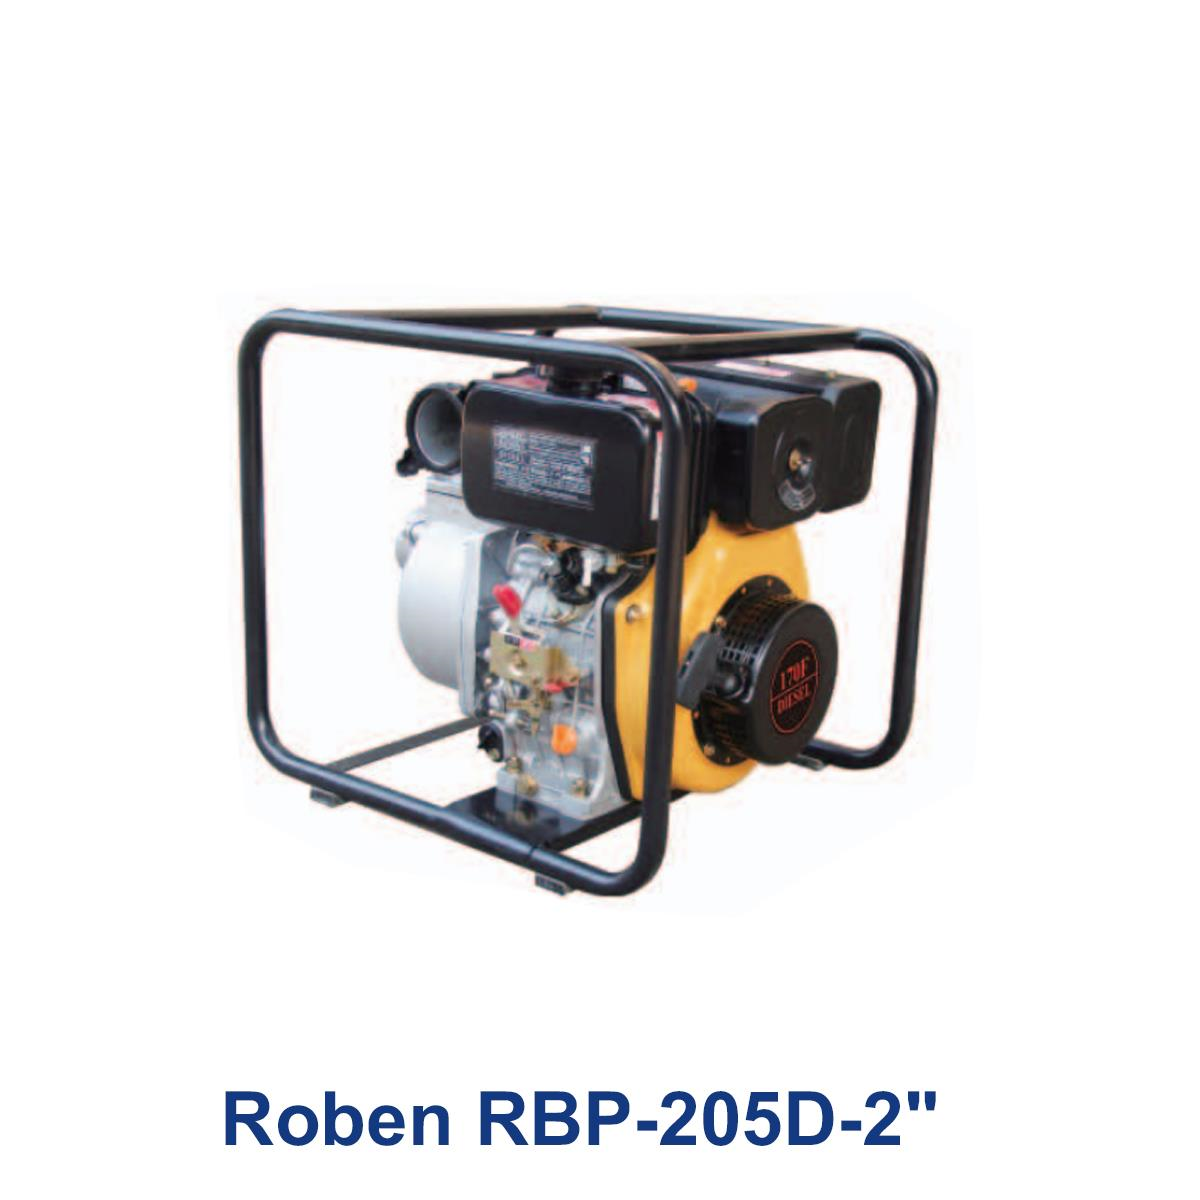 Roben-RBP-205D-2